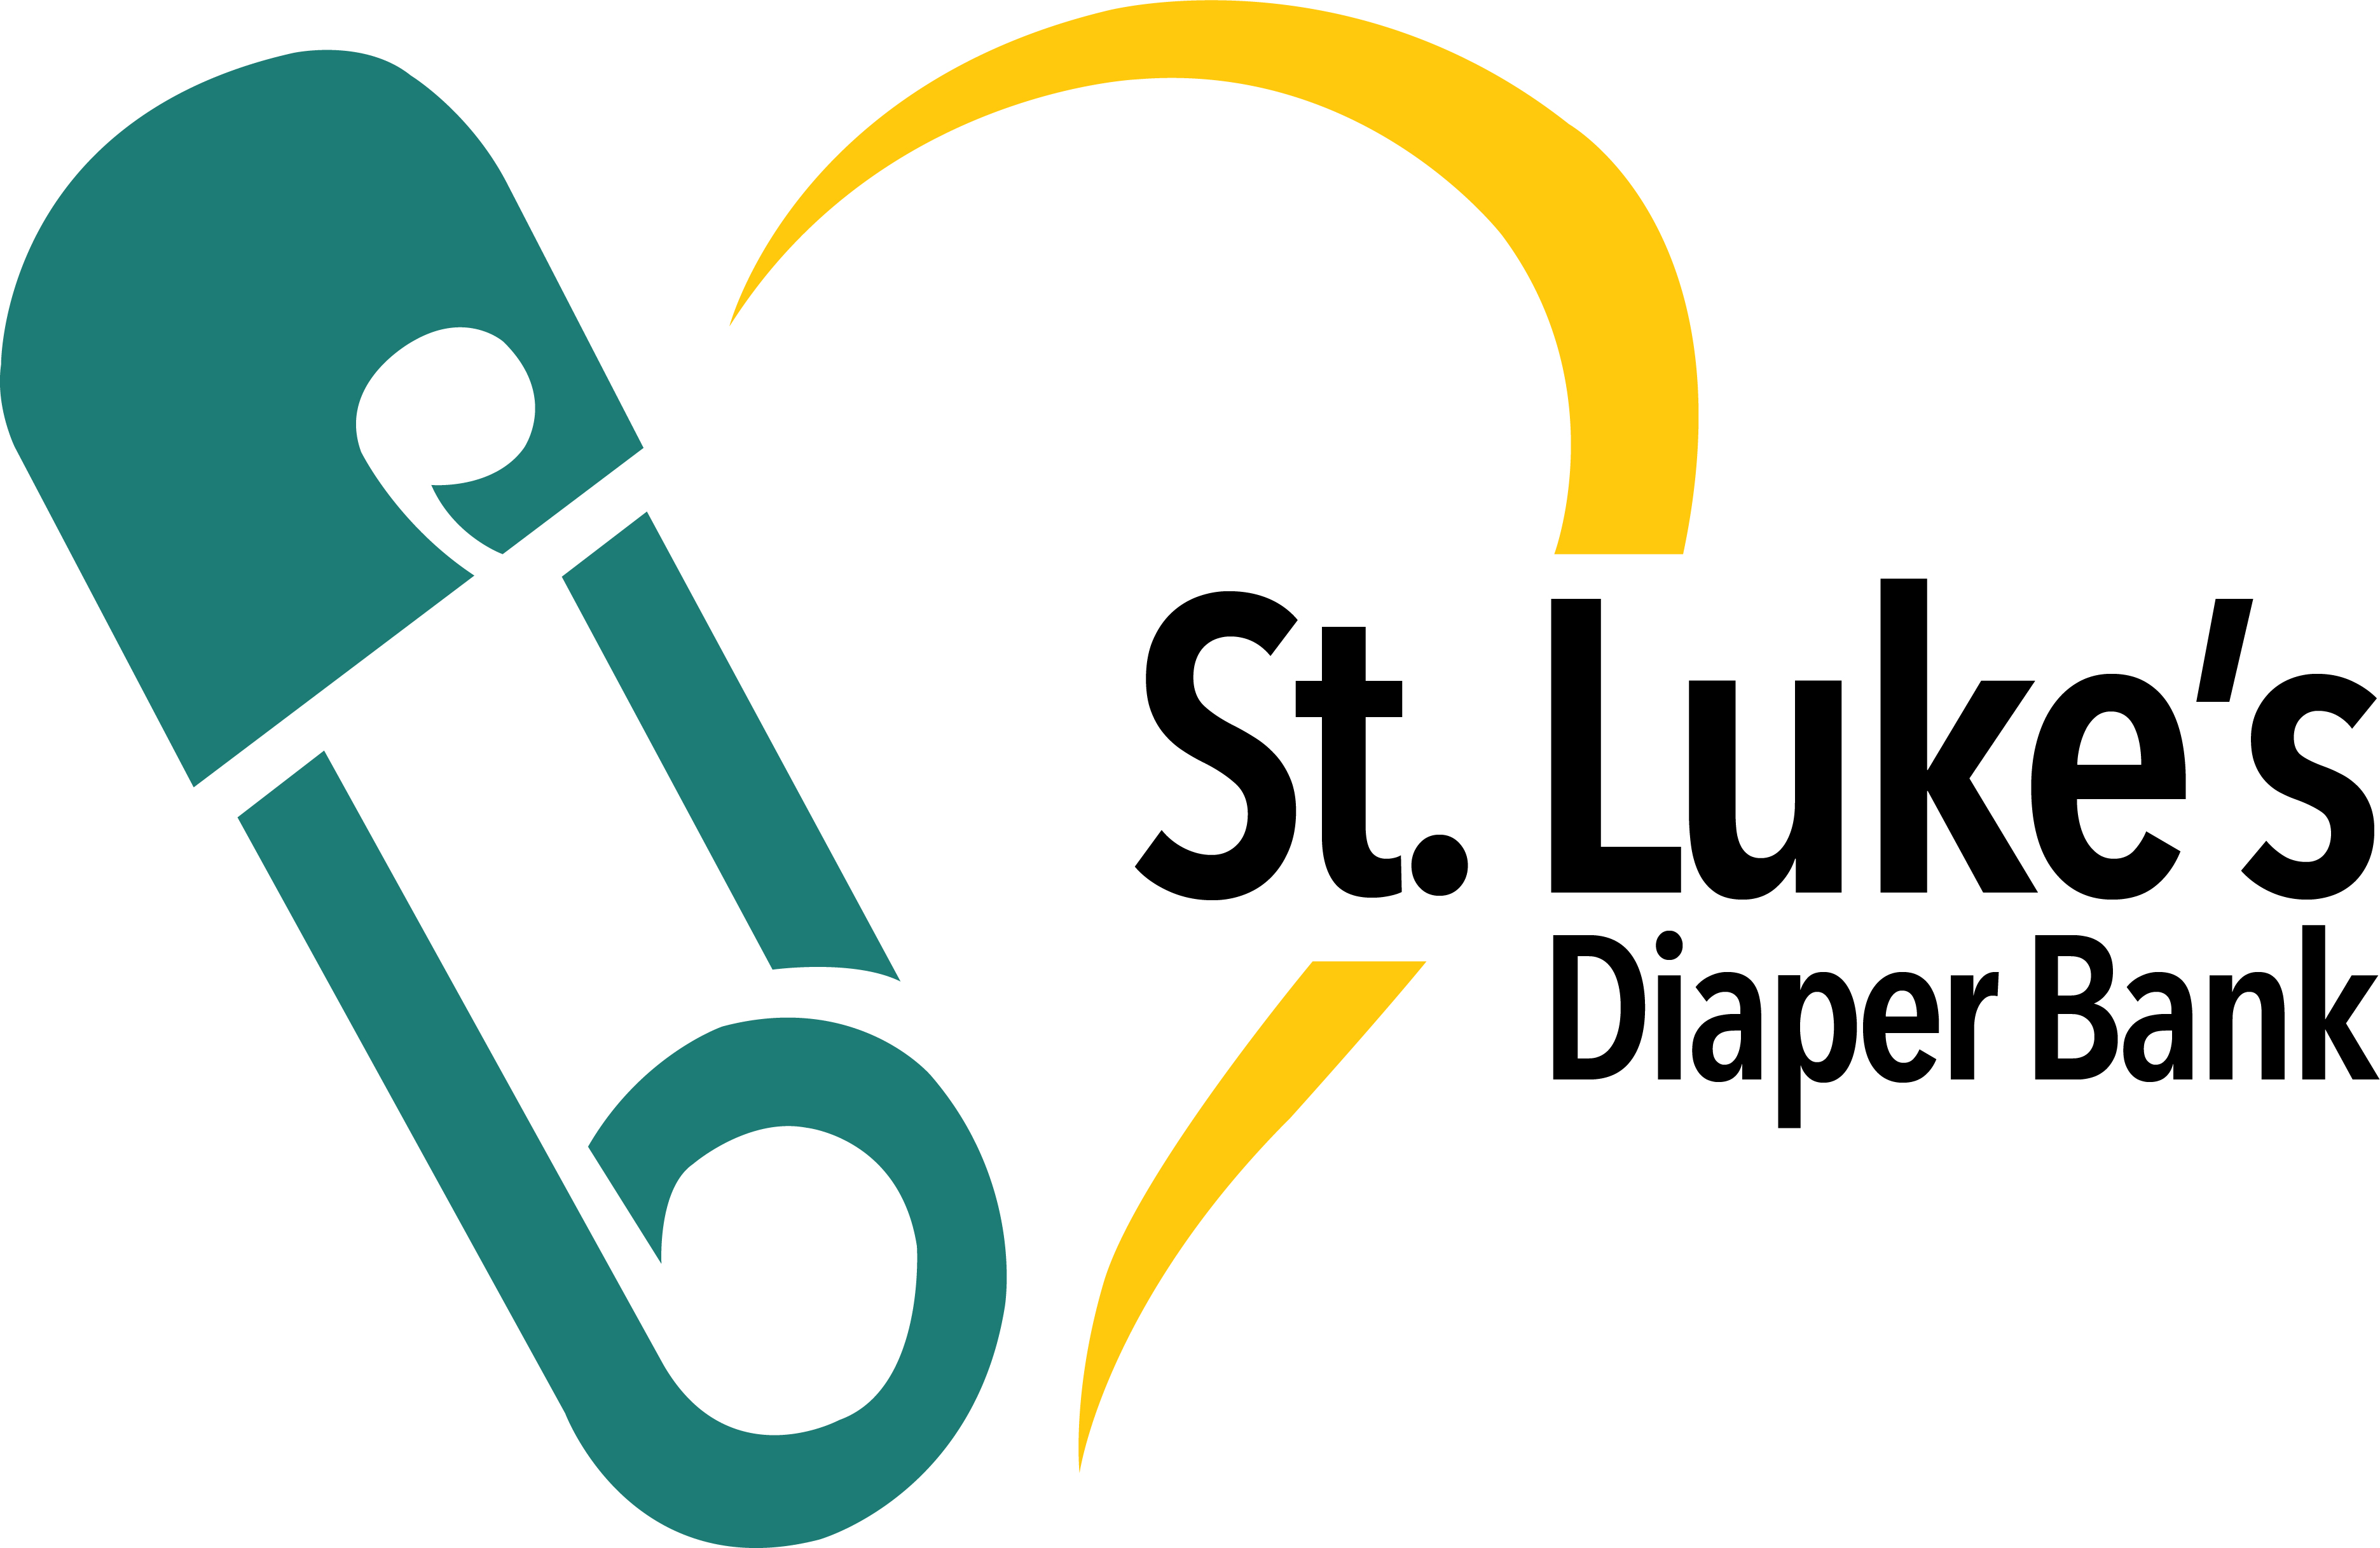 St. Luke's Diaper Bank